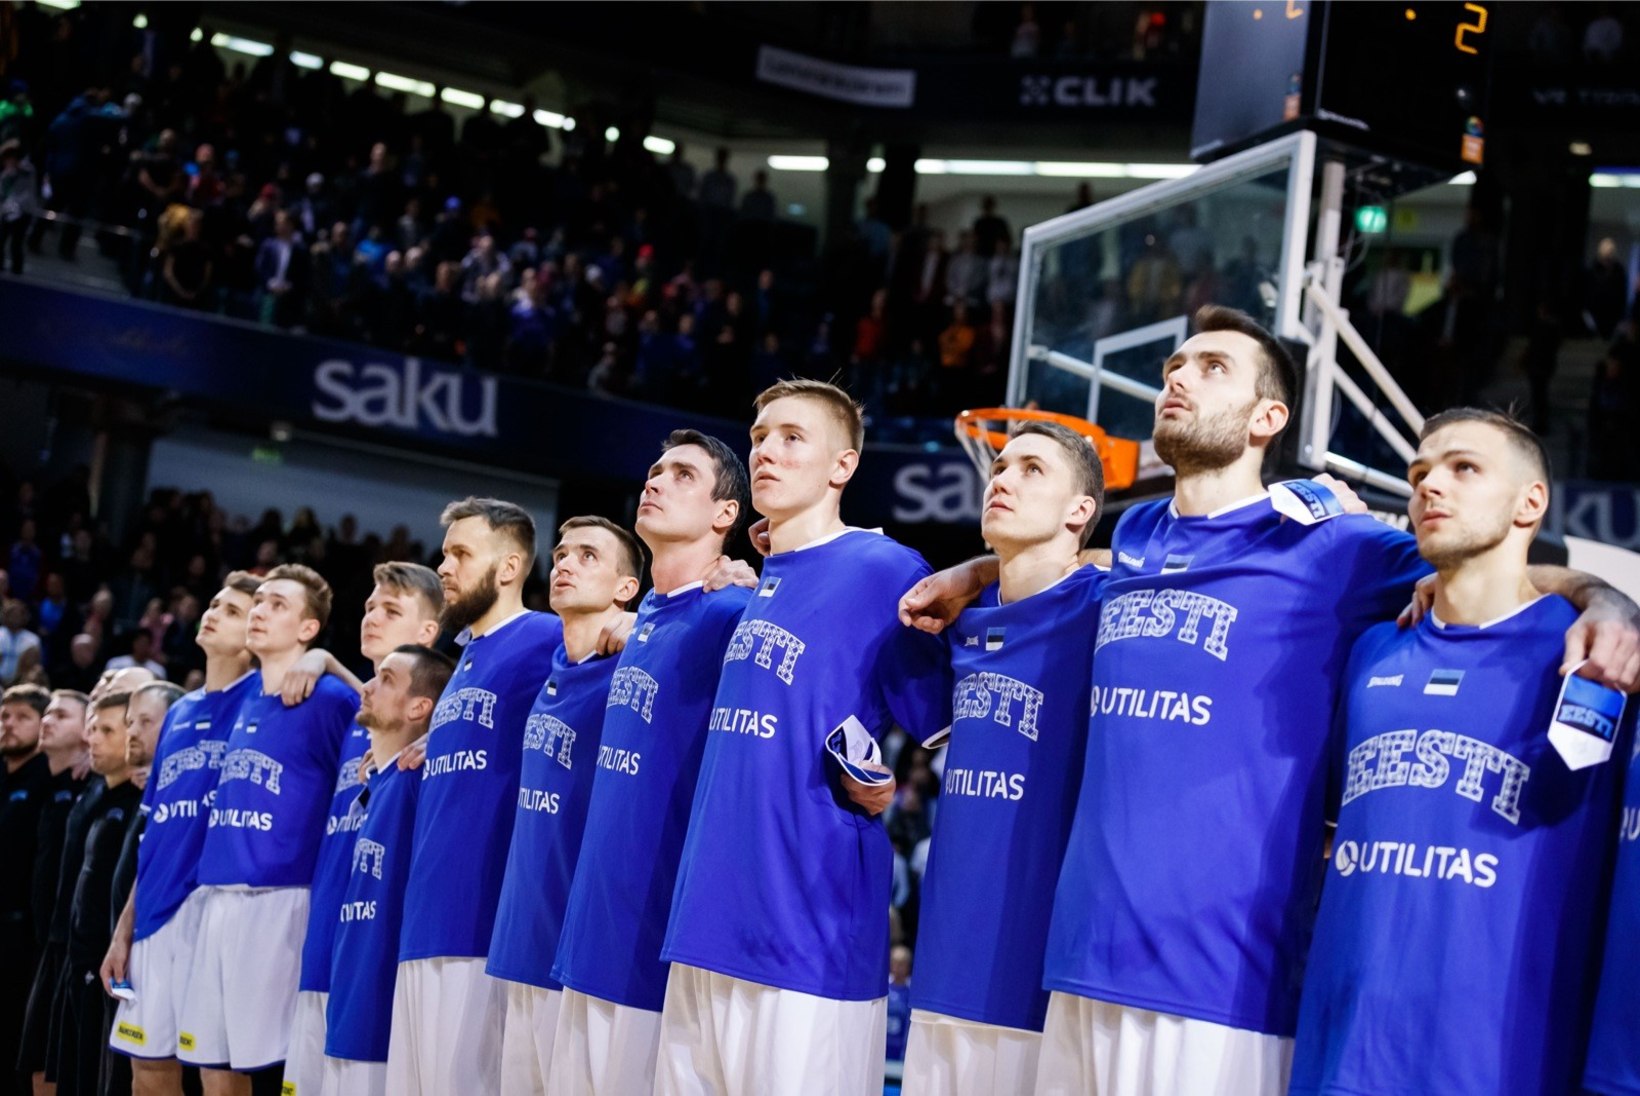 Selgusid Eesti korvpallikoondise potentsiaalsed vastased EM-valiksarjas